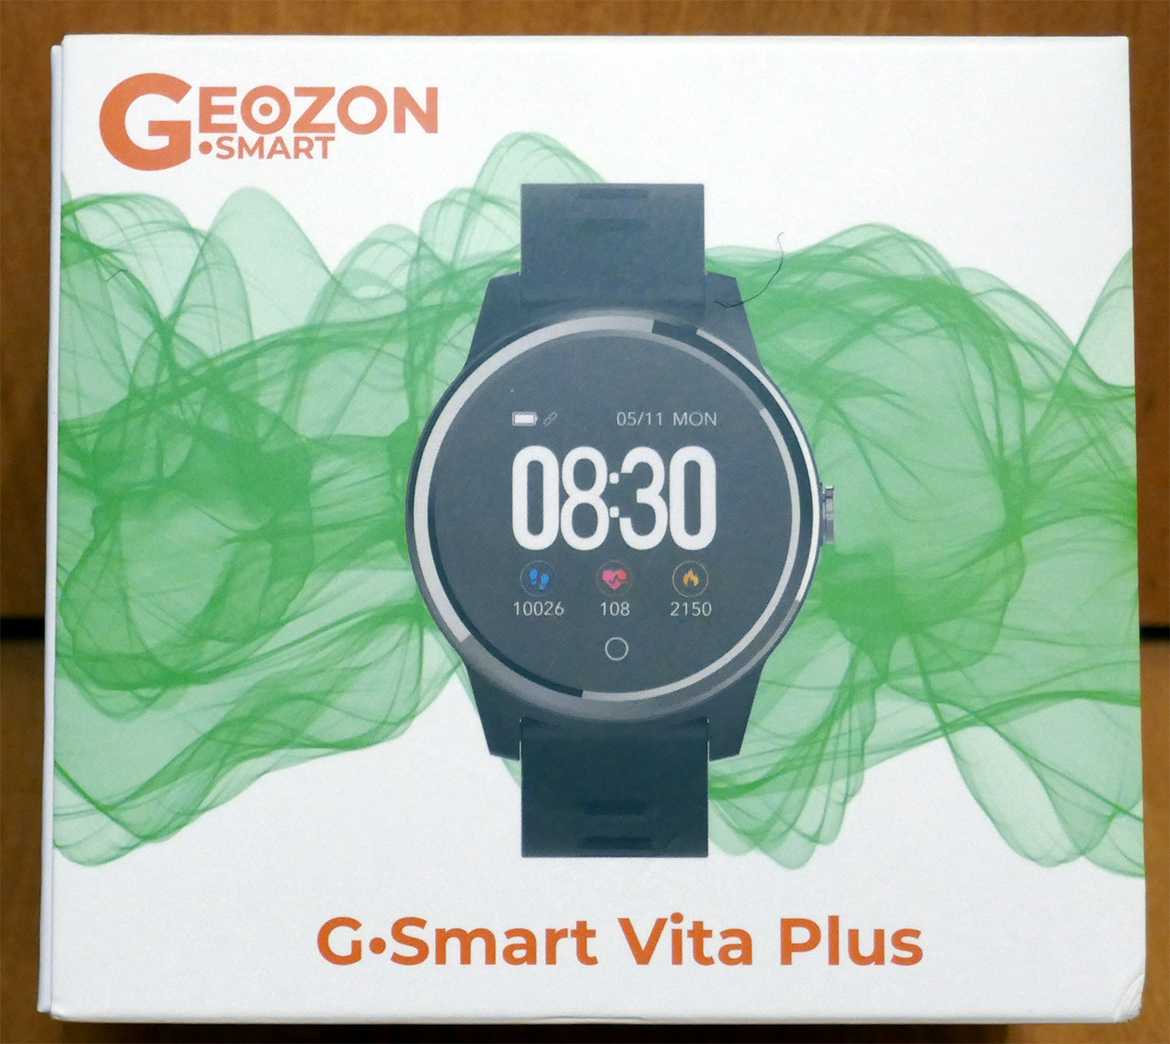 GEOZON Vita Plus - короткий но максимально информативный обзор Для большего удобства добавлены характеристики отзывы и видео